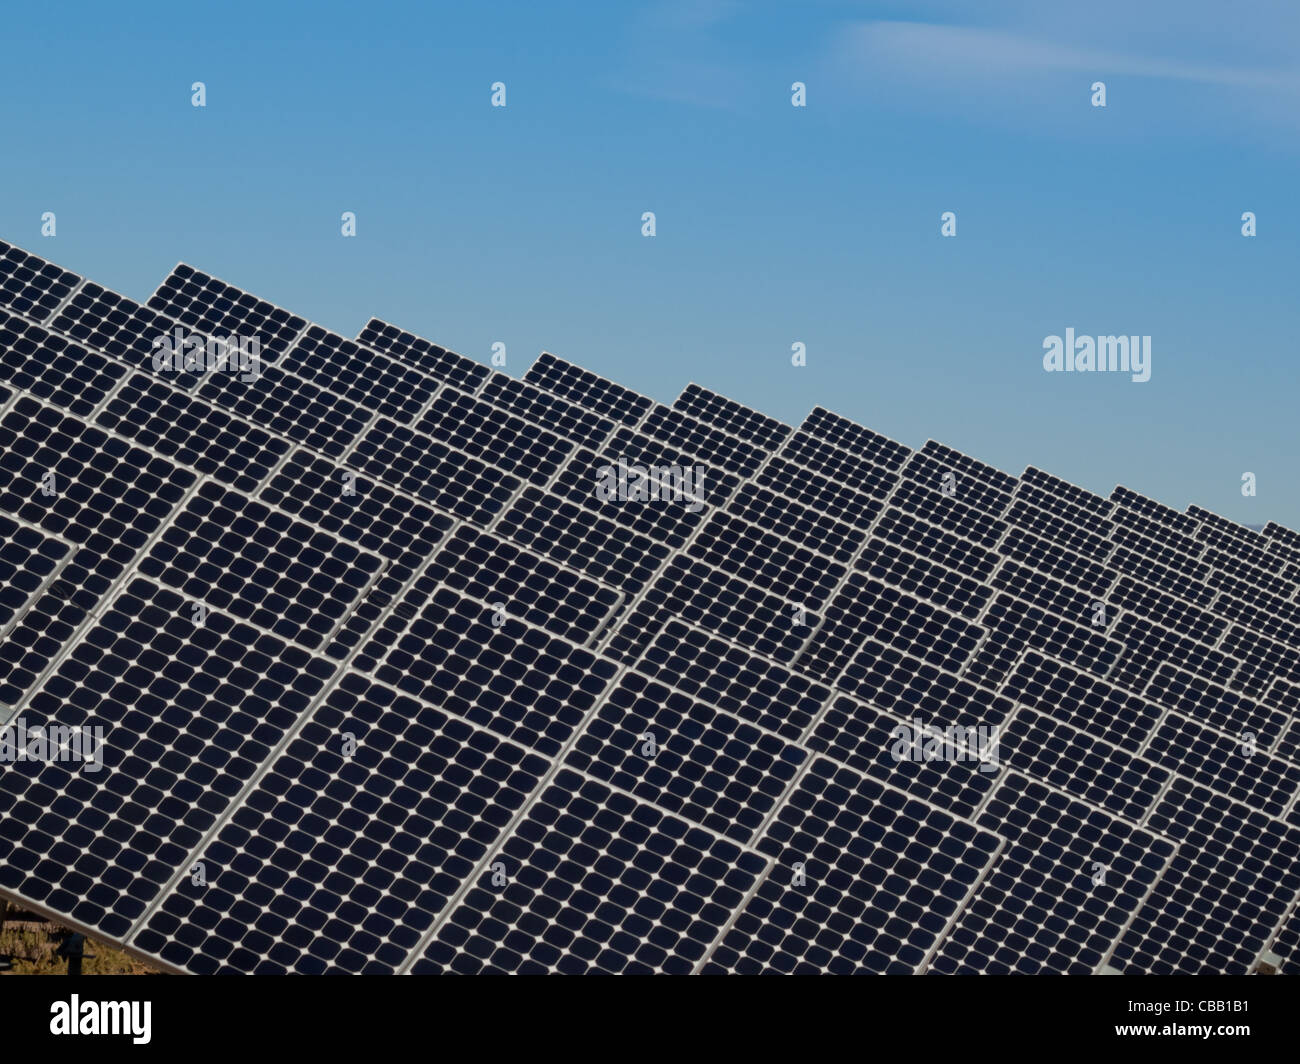 Une série de grands panneaux solaires forme une ligne symétrique à une centrale électrique dans la vallée de San Luis Colorado central. Ces panneaux utilisent un système de suivi pour suivre le soleil, la collecte de l'énergie et l'utilisation de cellules photovoltaïques pour transformer la lumière du soleil en électricité. Banque D'Images